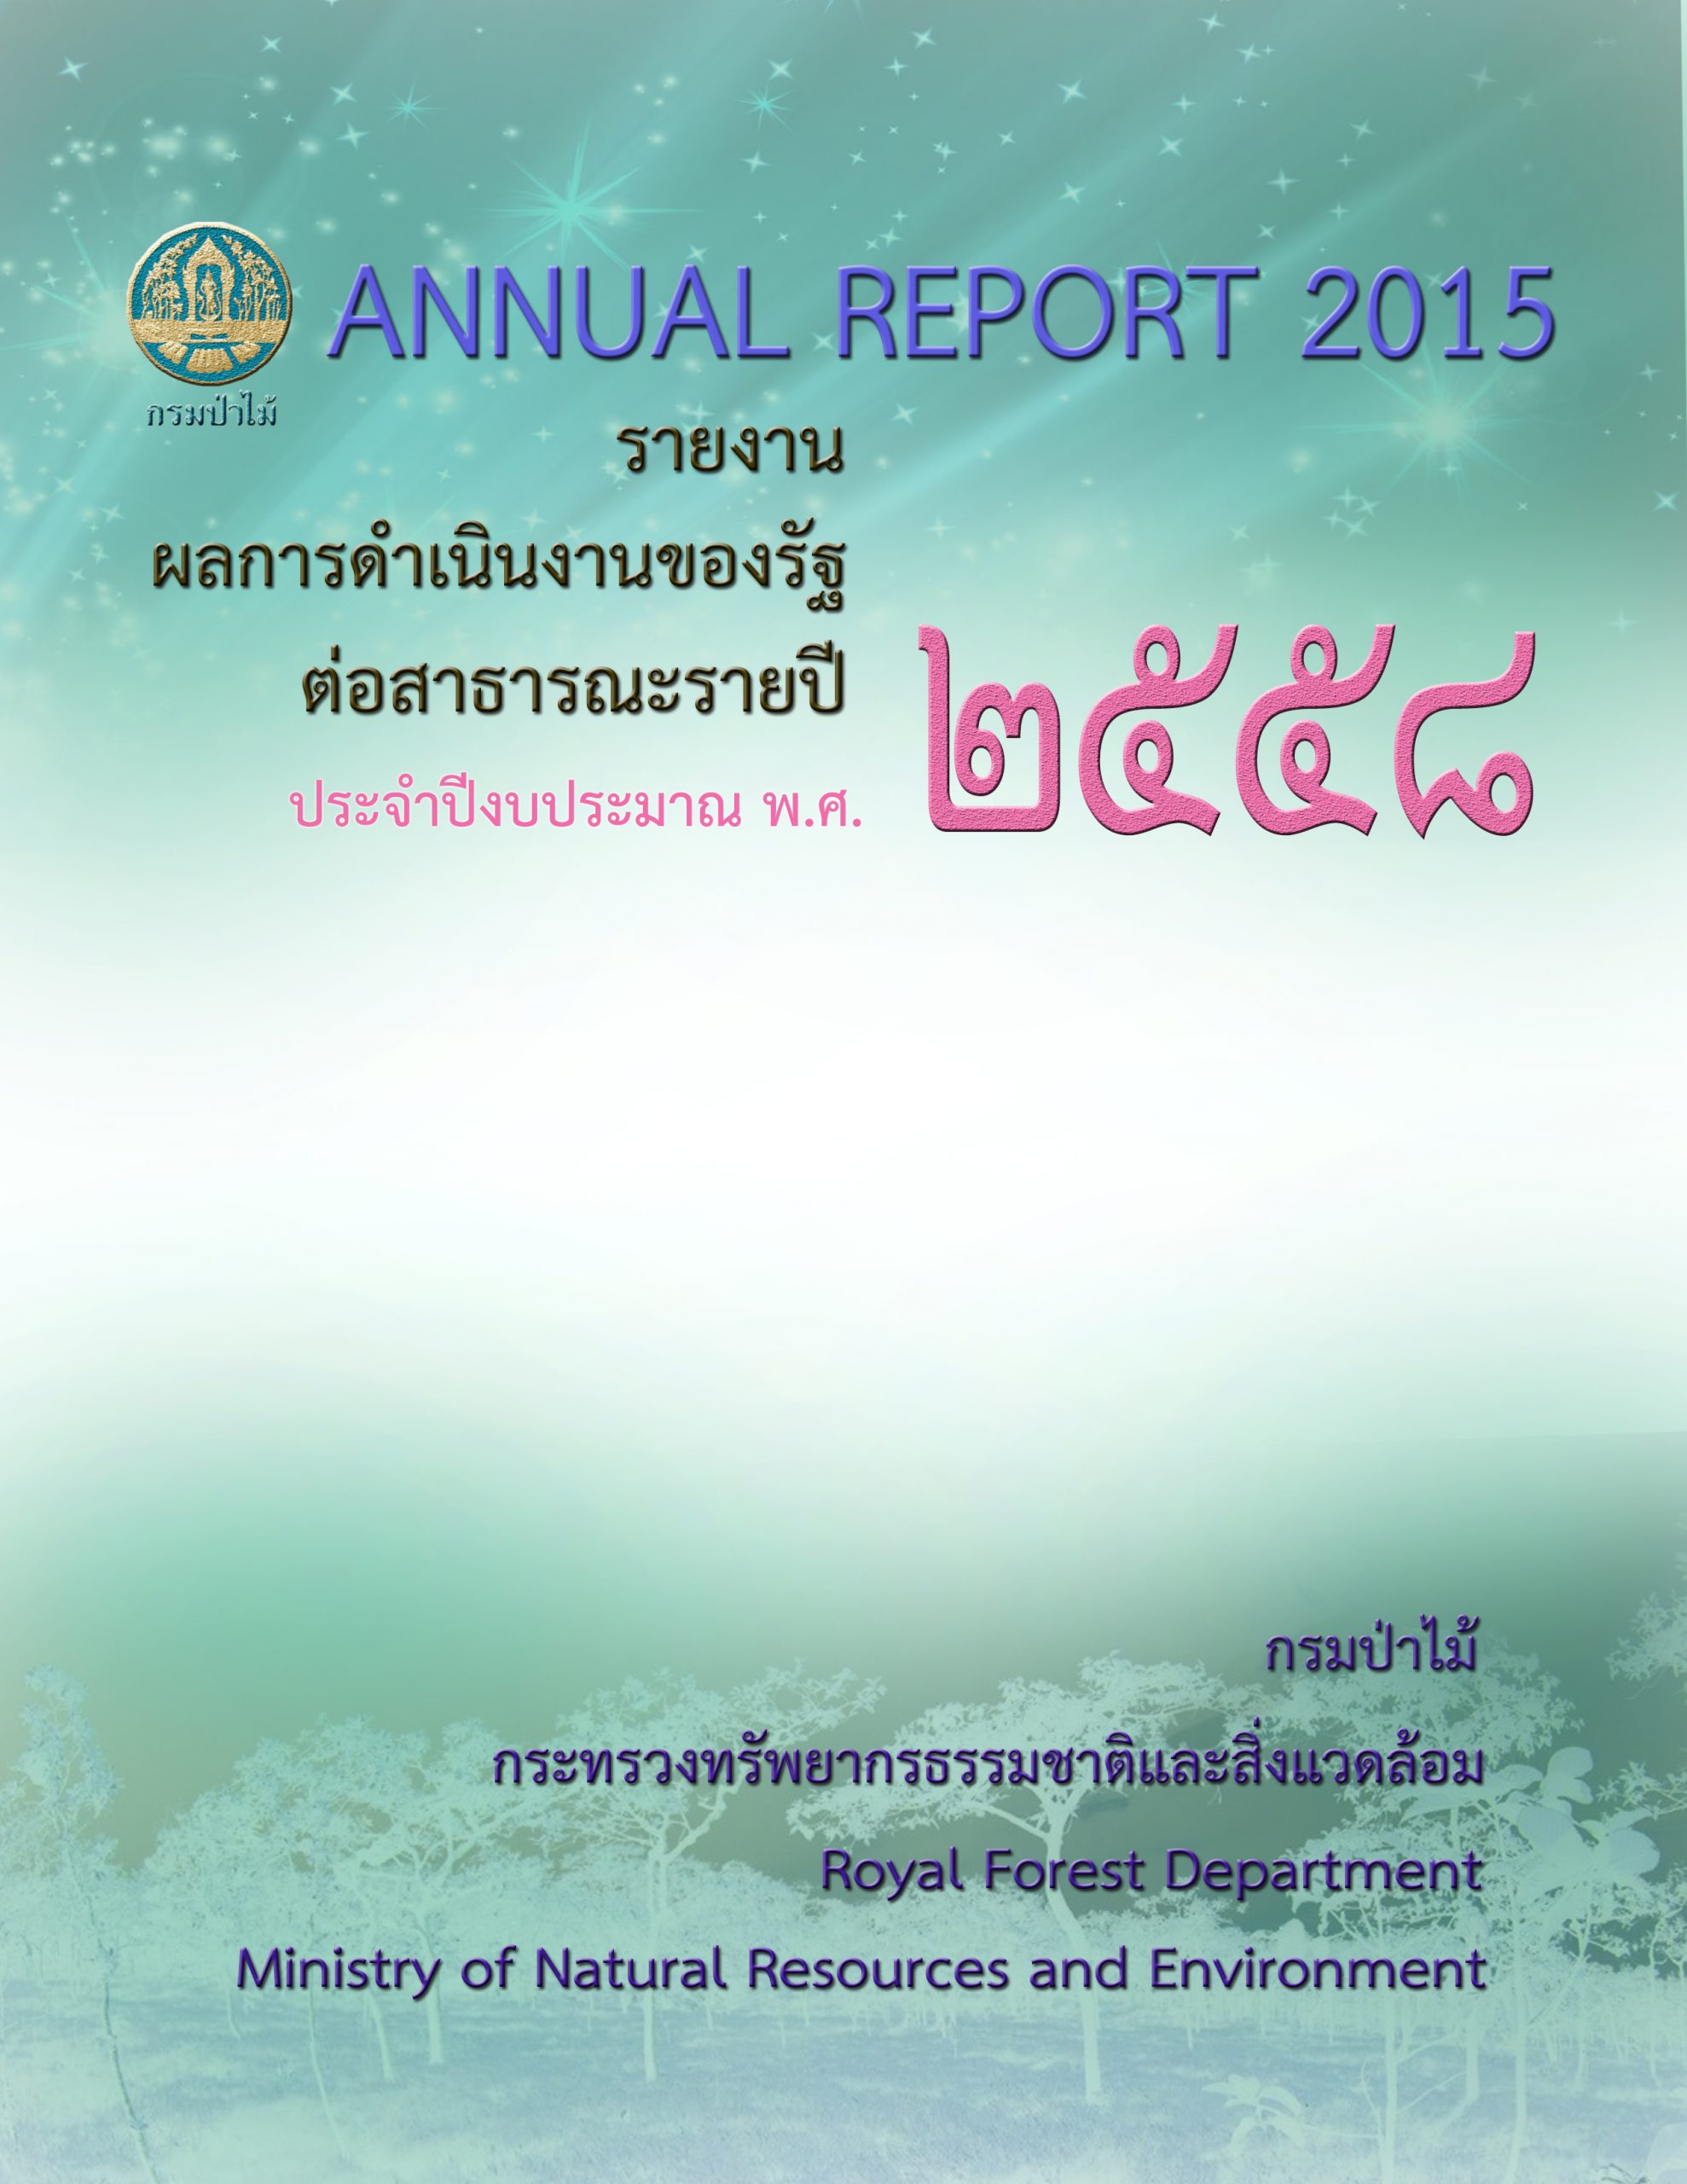 รายงานผลการดำเนินงานของรัฐต่อสาธารณะรายปี ประจำปีงบประมาณ พ.ศ. 2558 (Annual Report 2015)